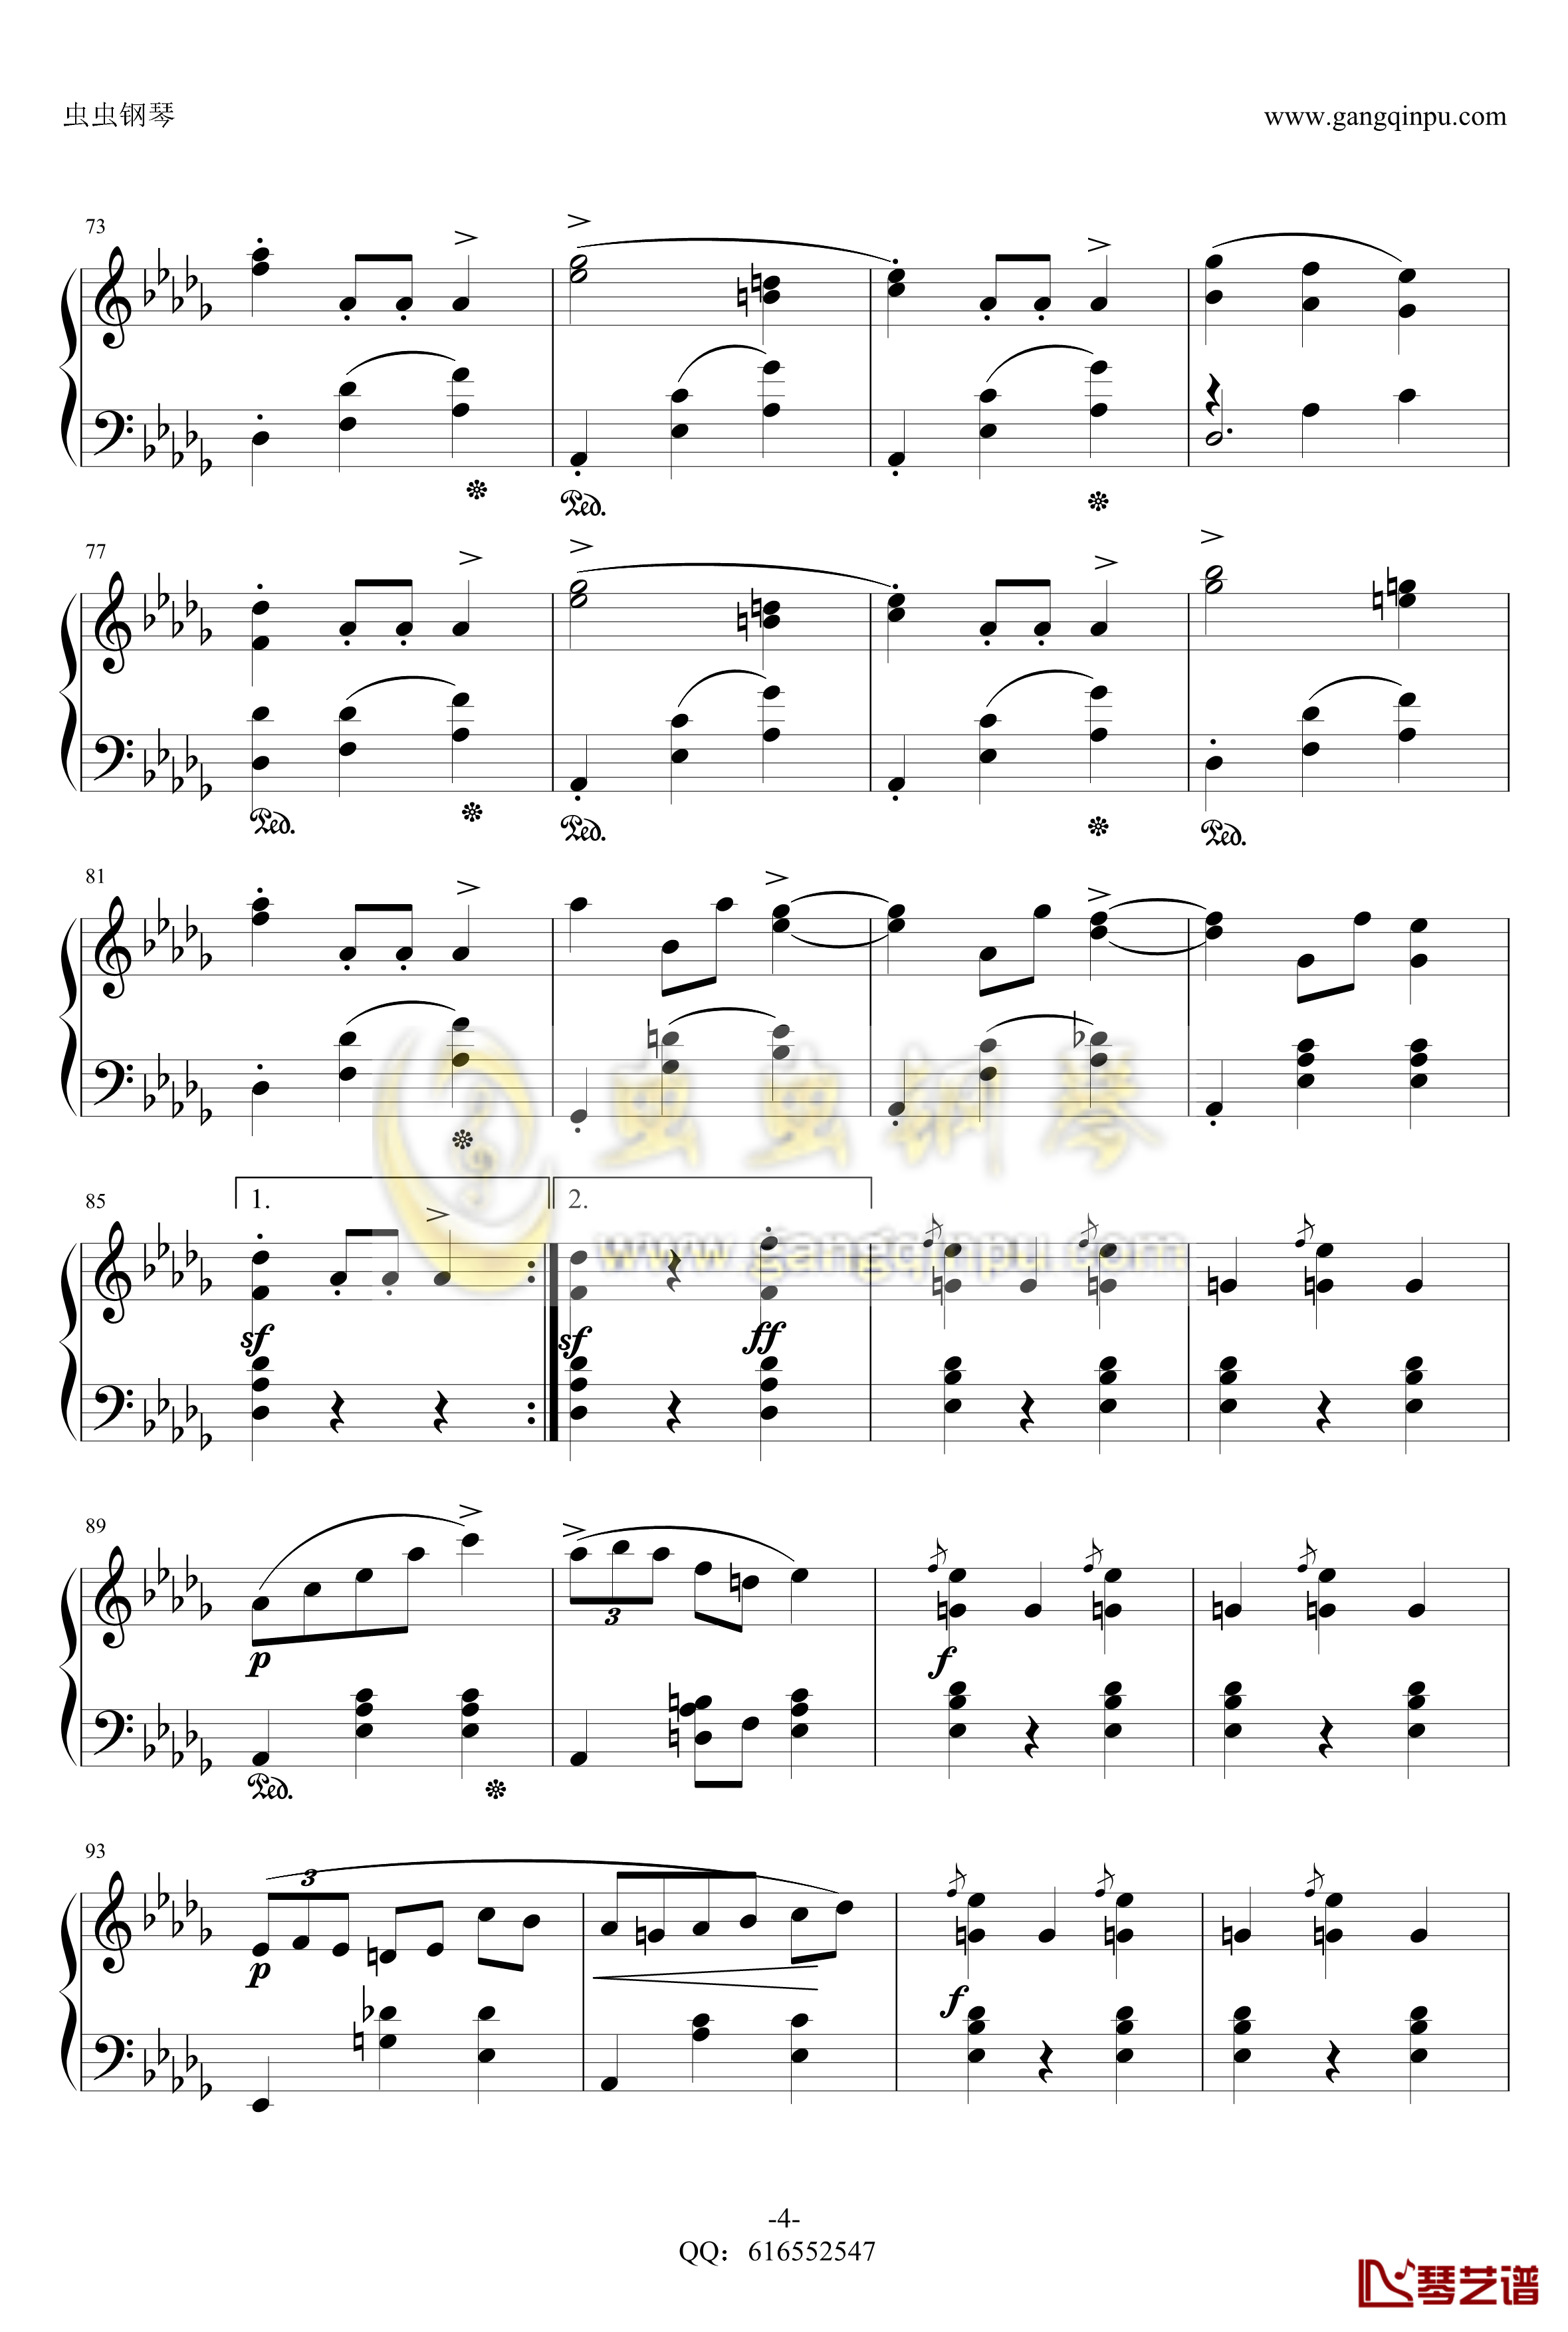 降E大调辉煌的大圆舞曲钢琴谱-金龙鱼-肖邦-chopin-4